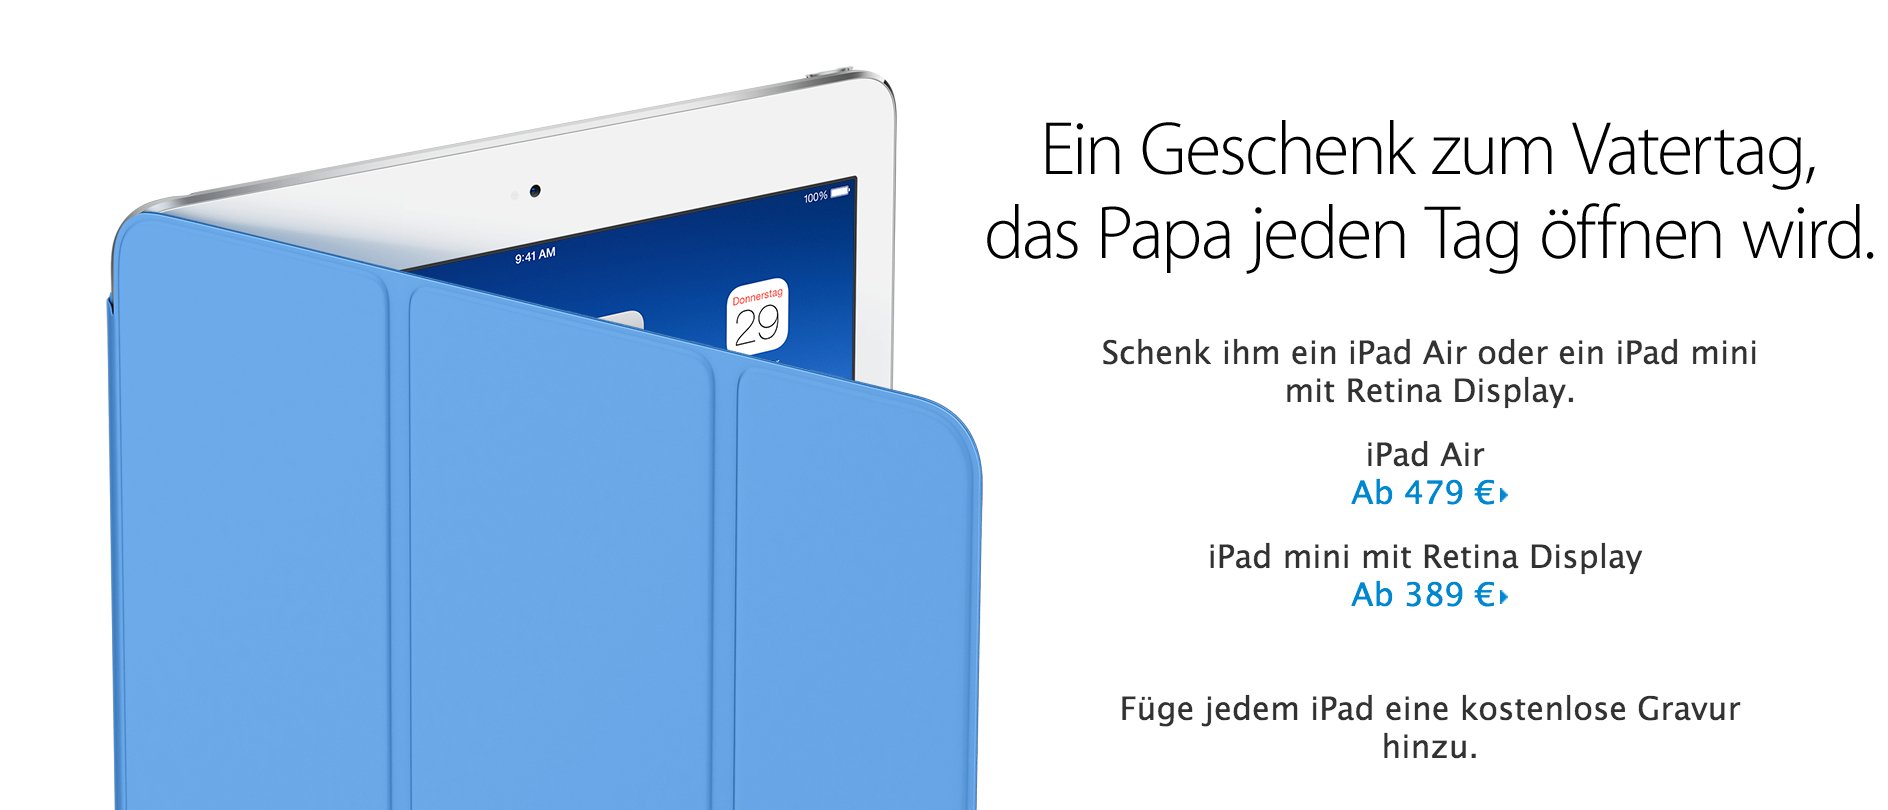 Geschenke zu Vatertag: Schenke Papa ein iPad! 1